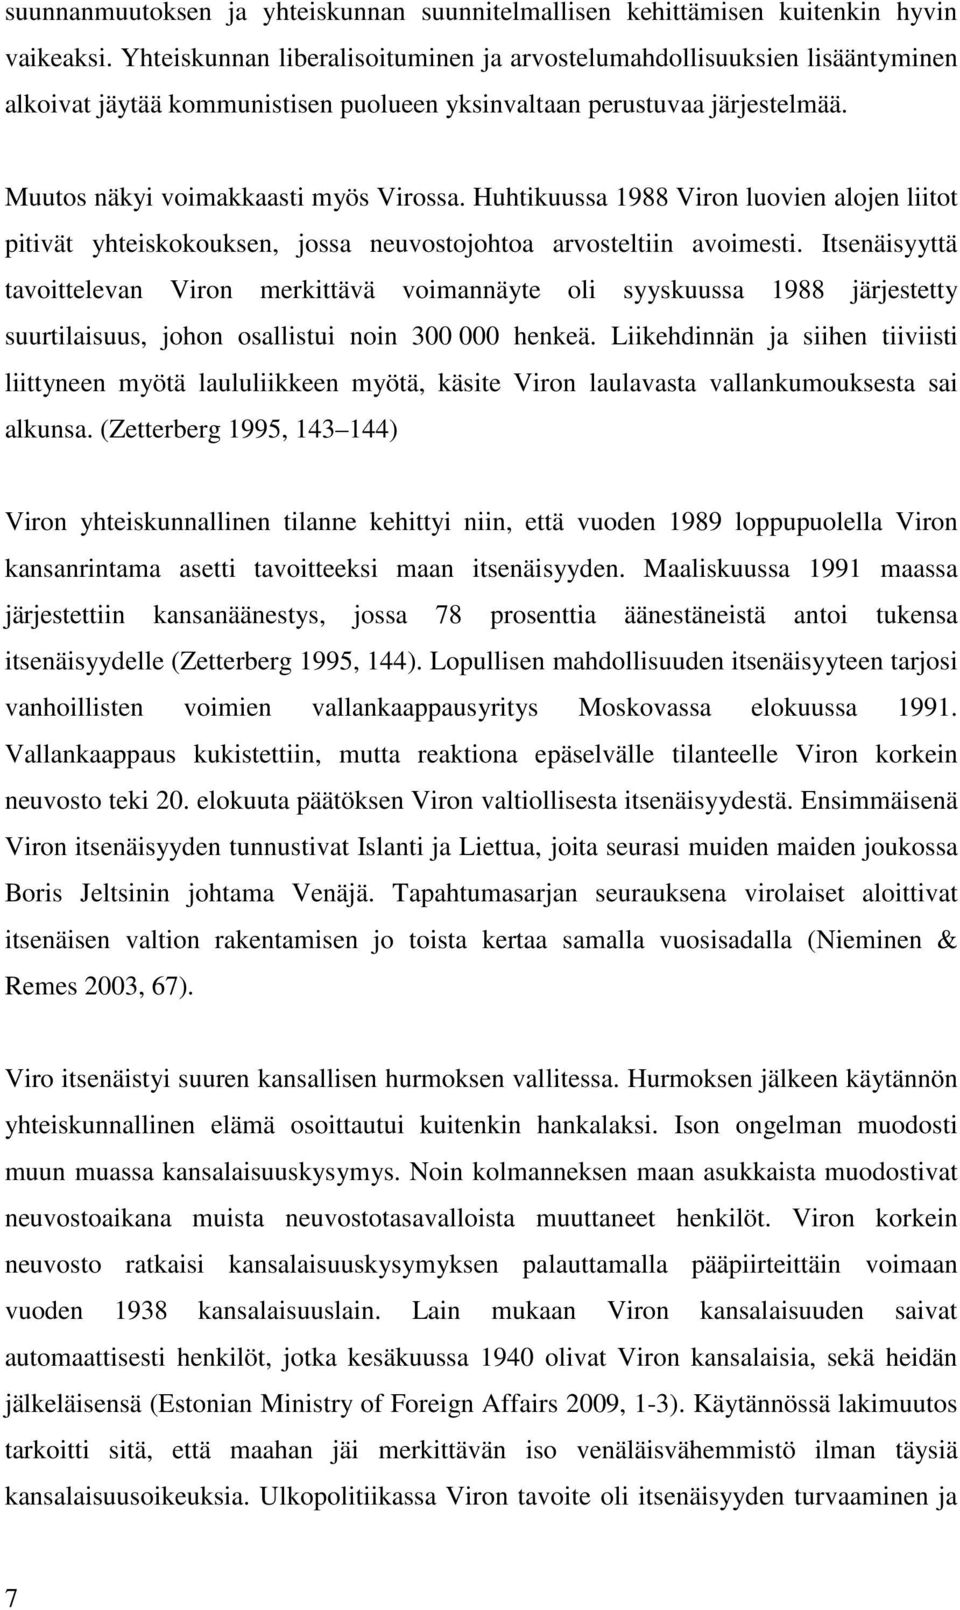 Huhtikuussa 1988 Viron luovien alojen liitot pitivät yhteiskokouksen, jossa neuvostojohtoa arvosteltiin avoimesti.